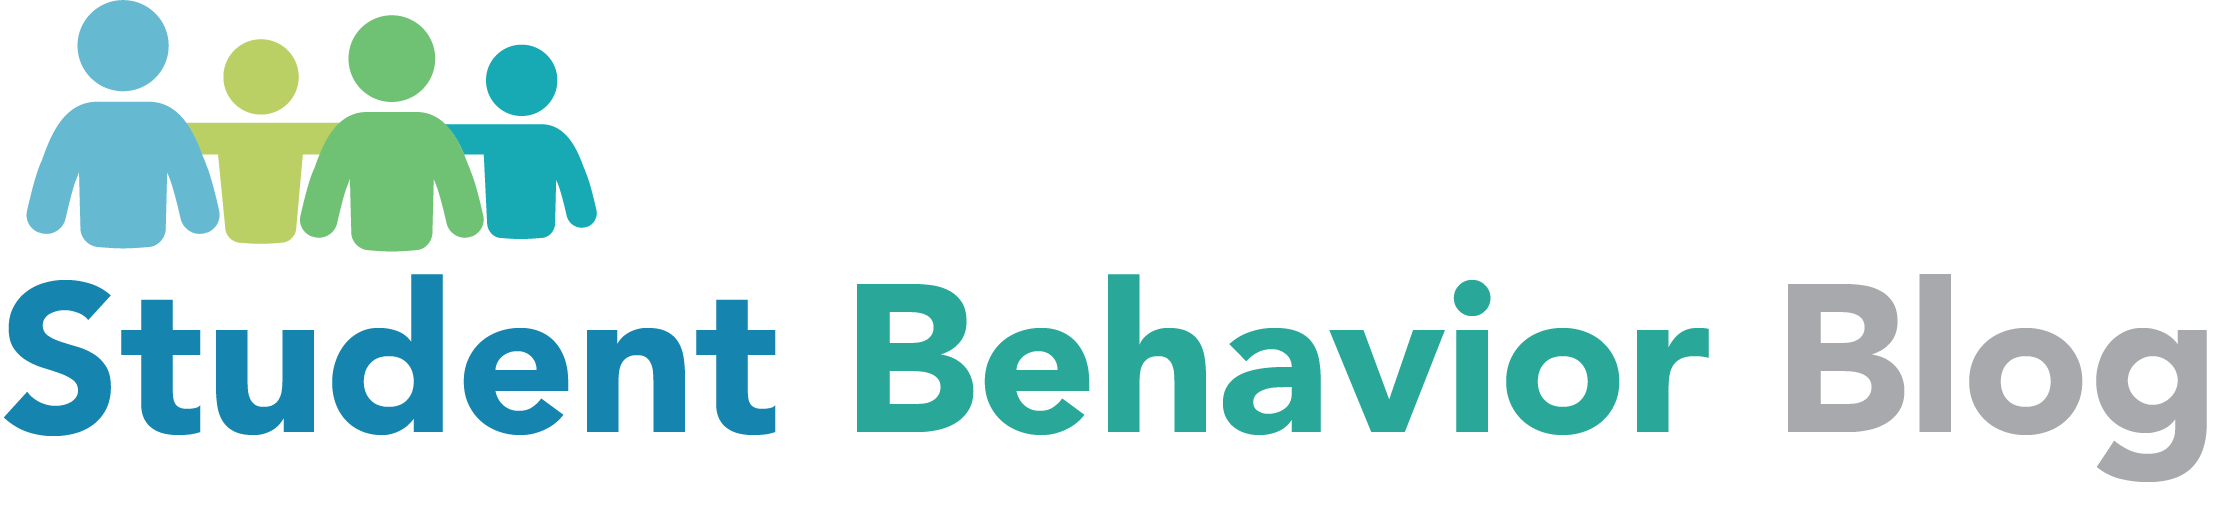 Student Behavior Blog Logo